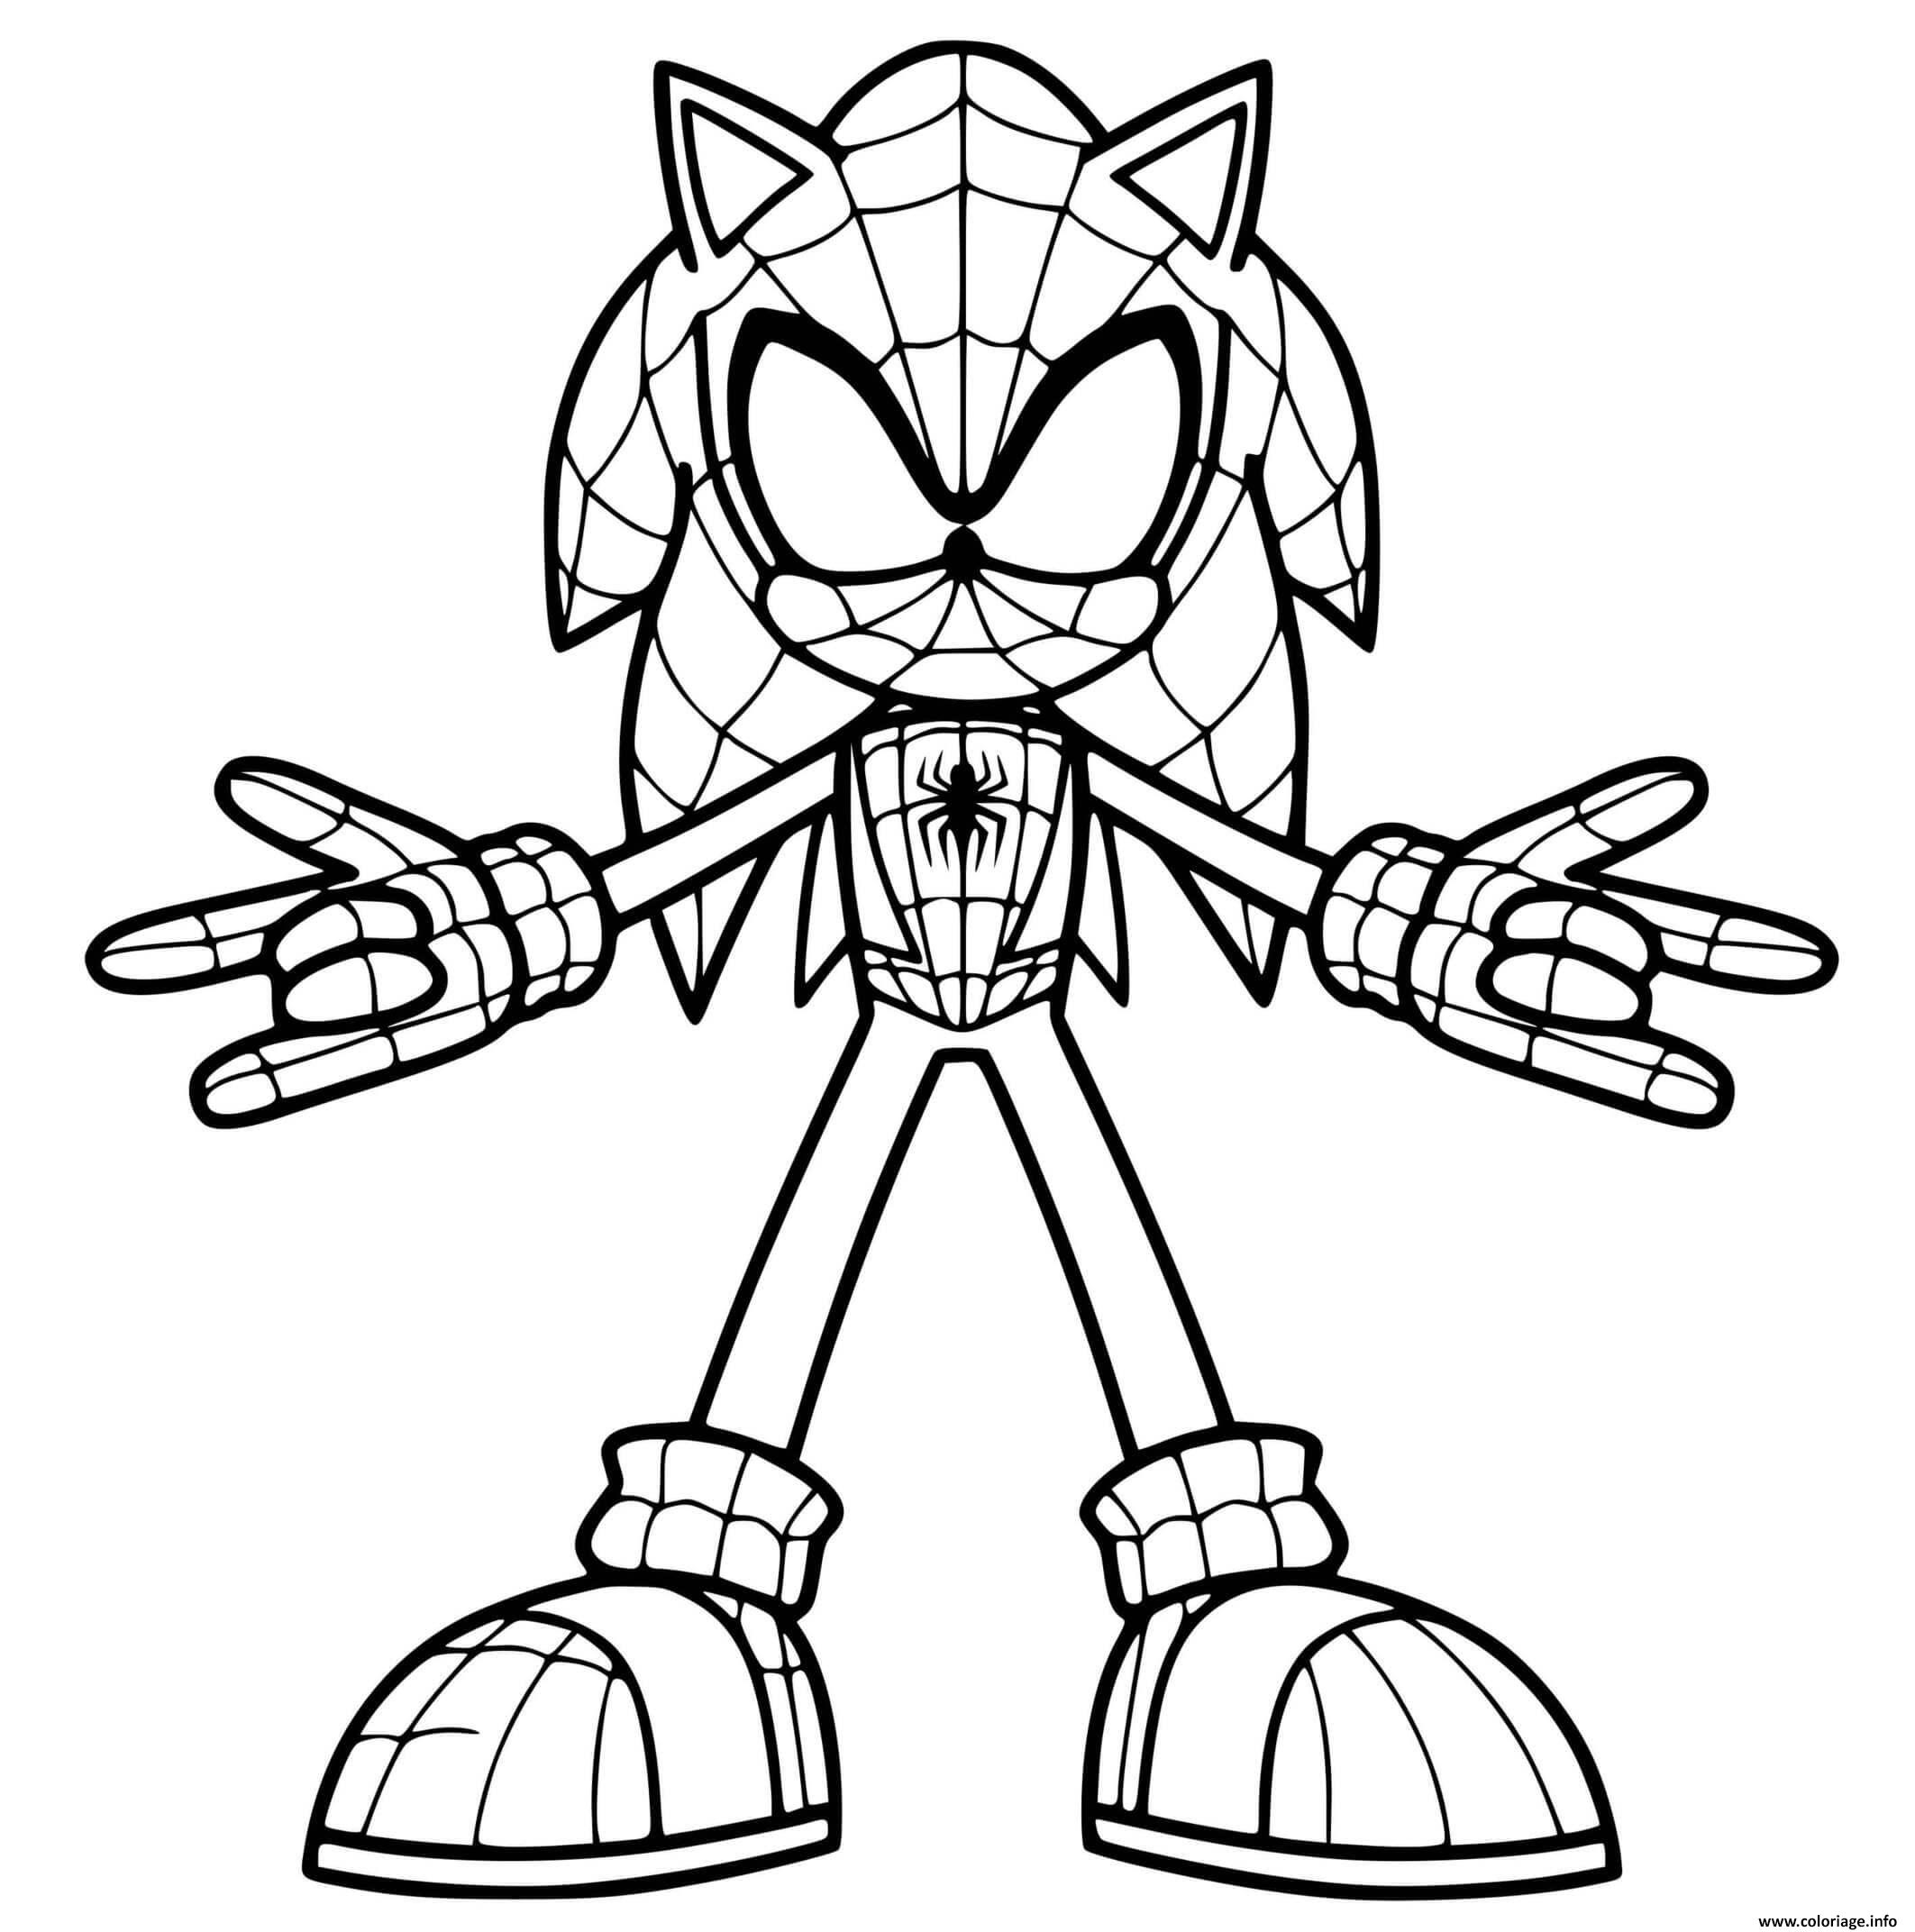 Image de Coloriage Sonic Spiderman